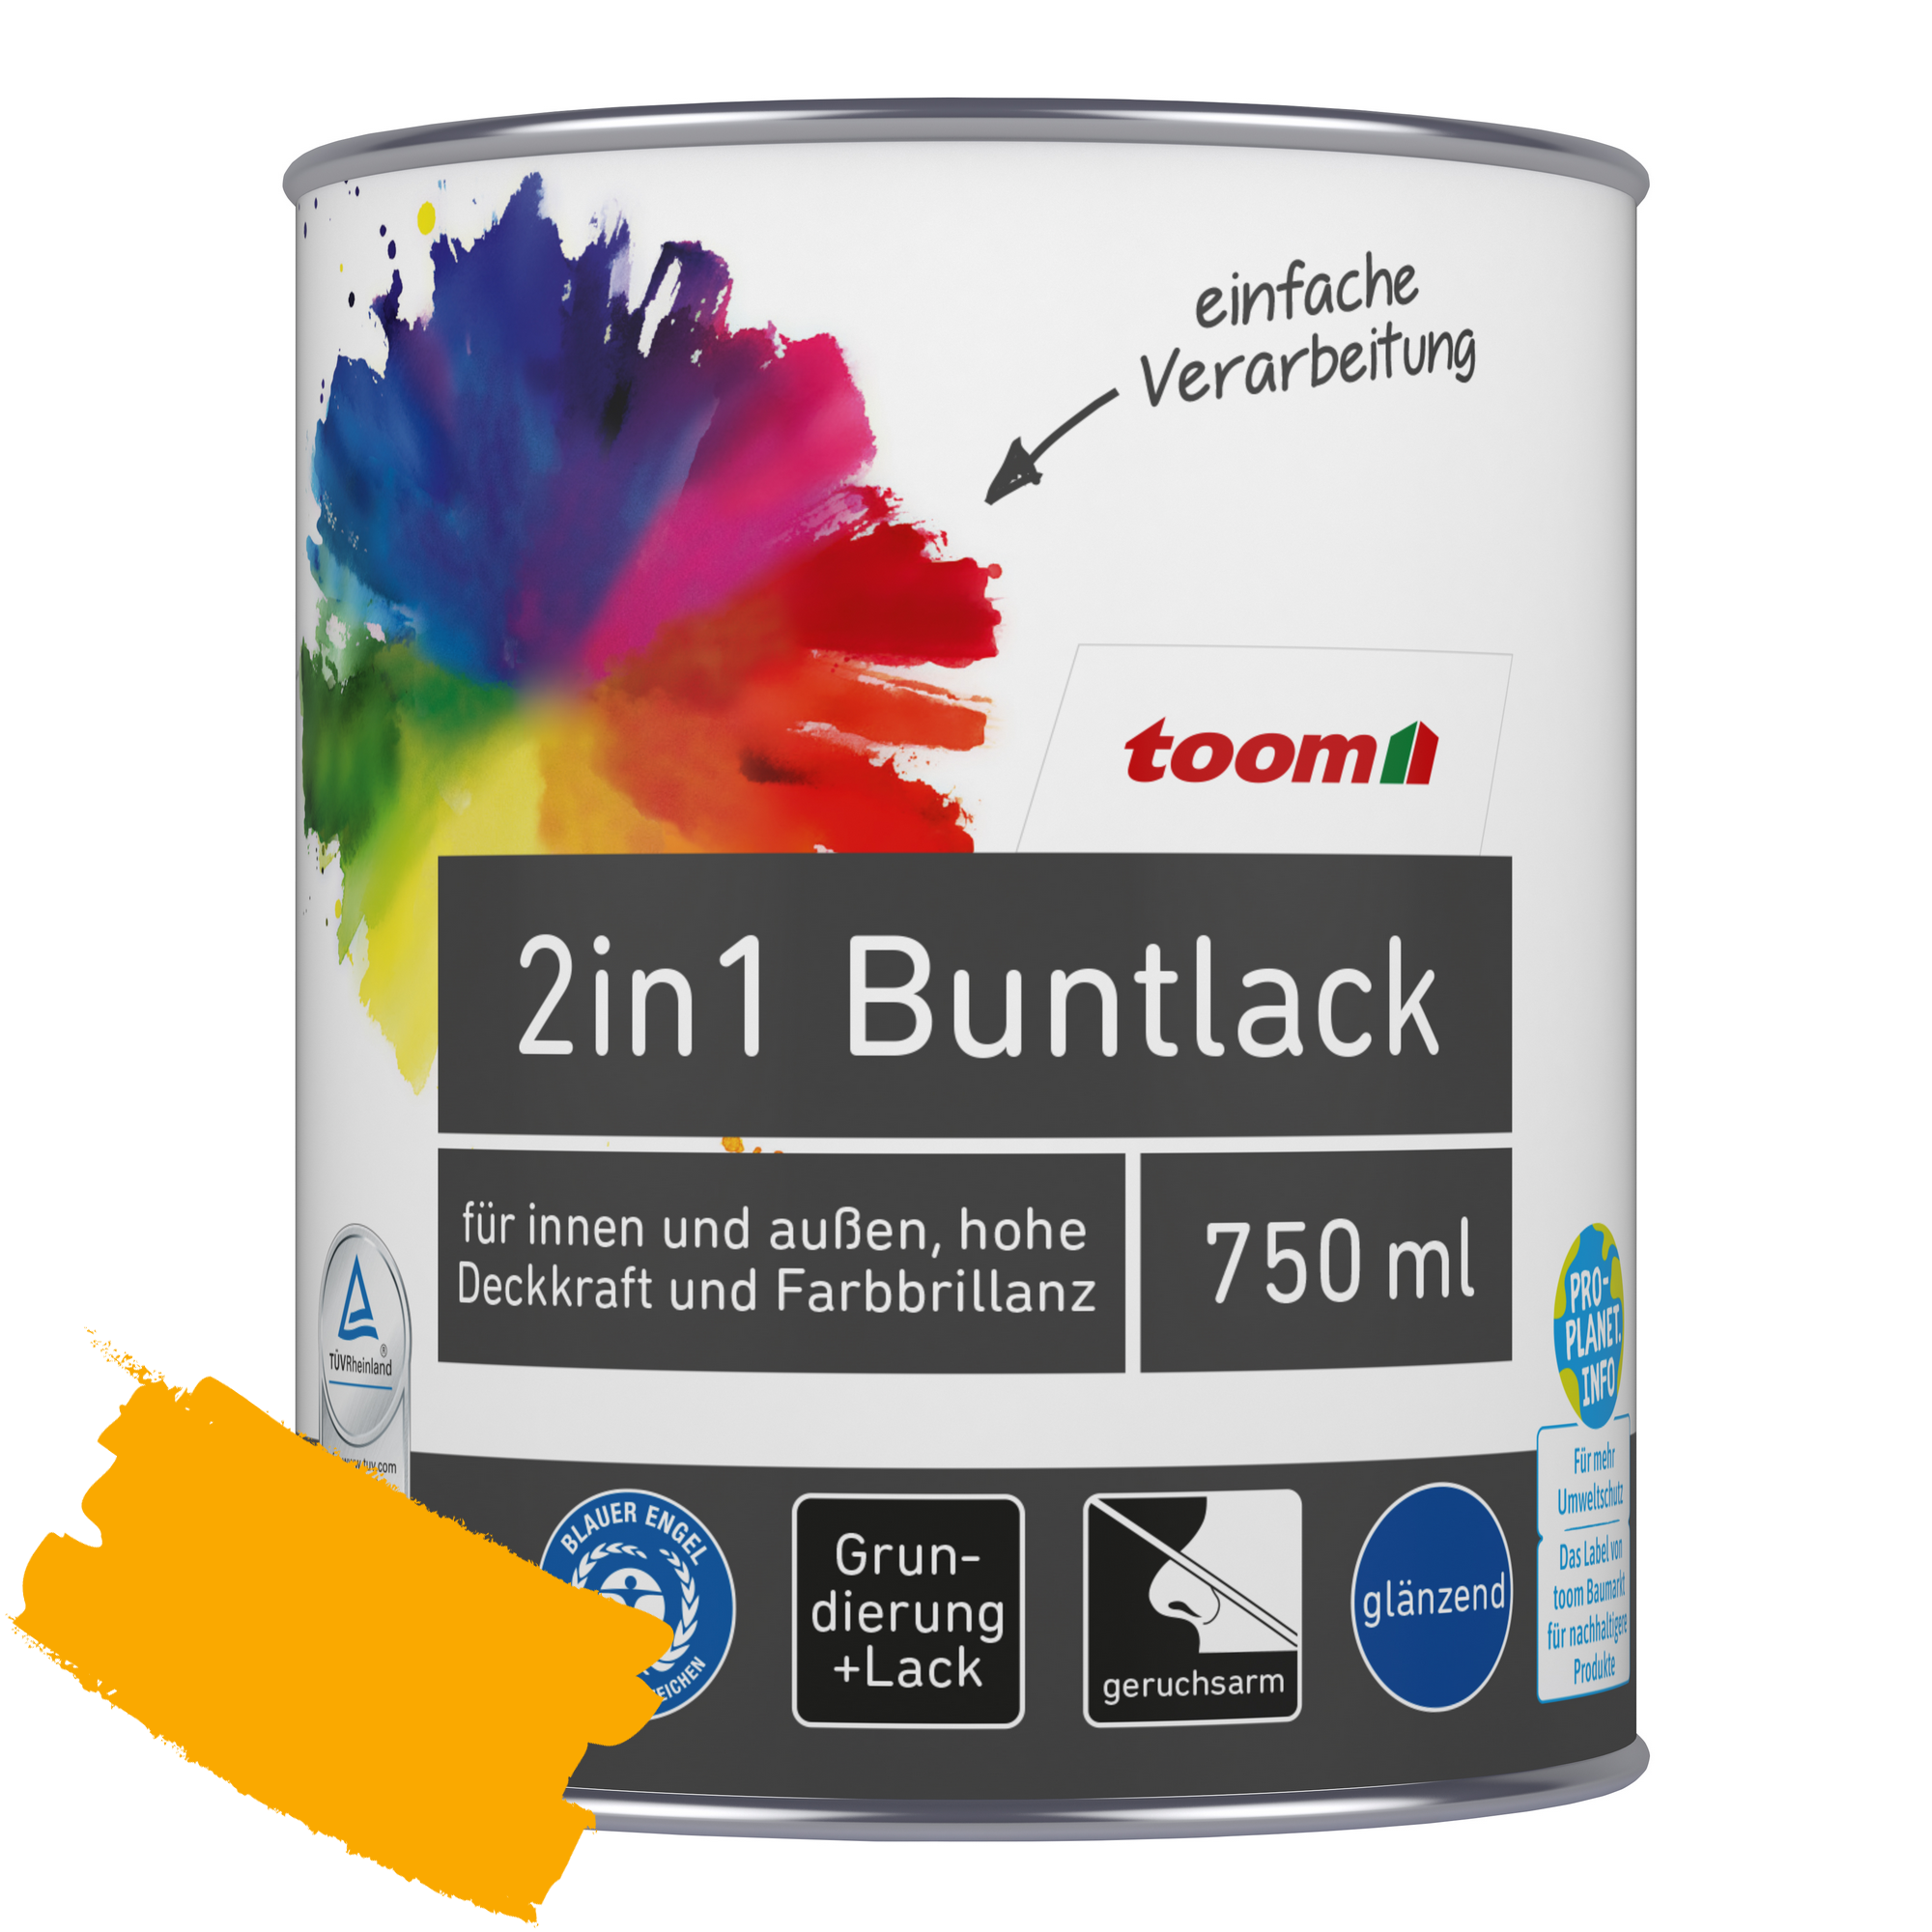 2in1 Buntlack 'Sonnenblume' orangegelb glänzend 750 ml + product picture